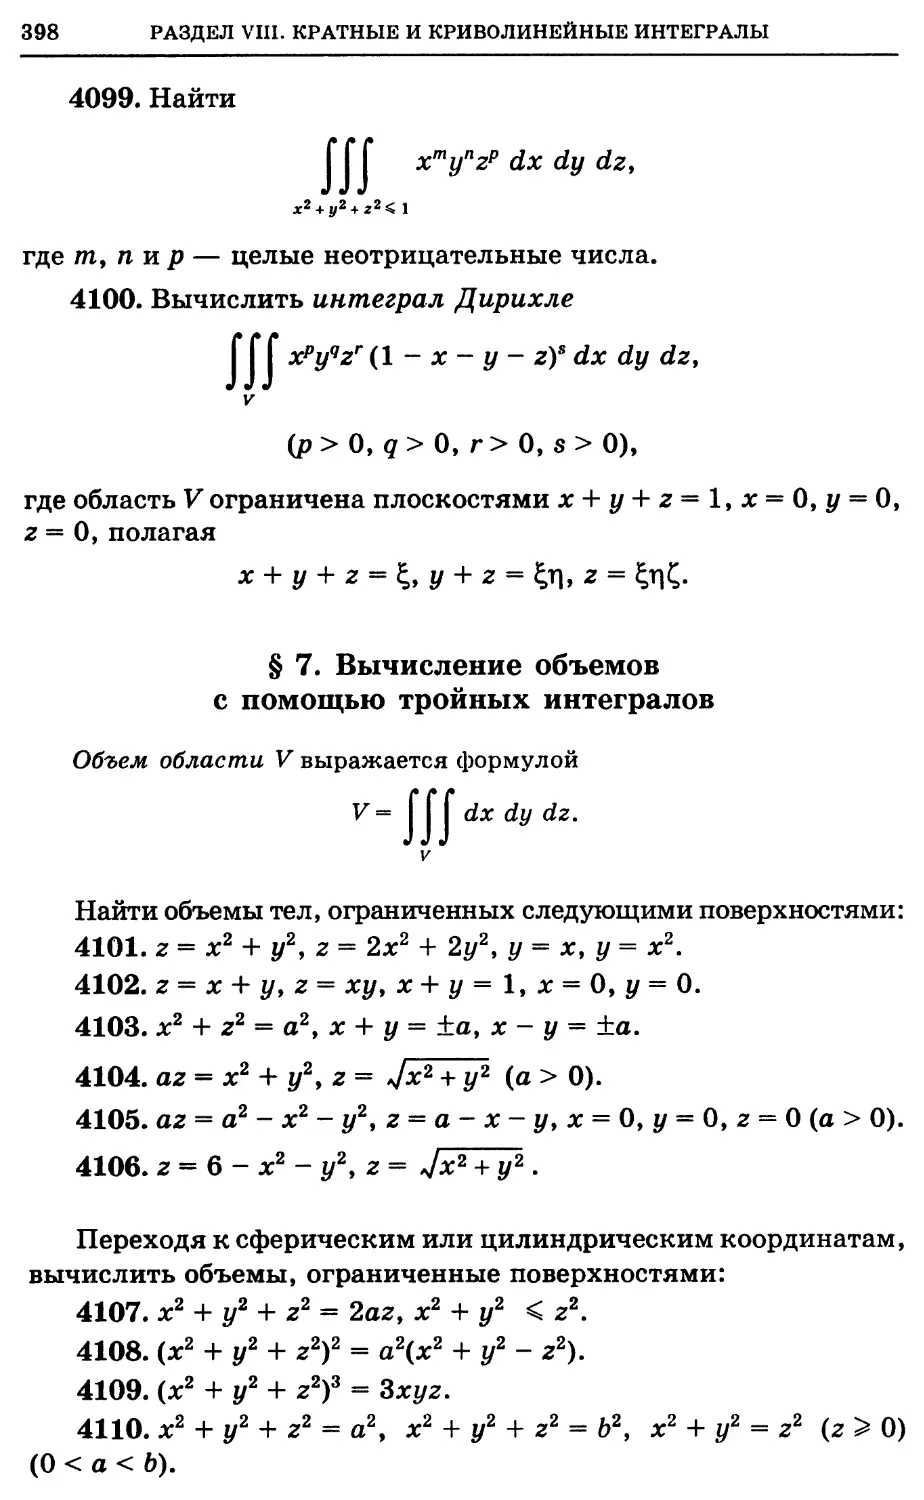 §7. Вычисление объемов с помощью тройных интегралов